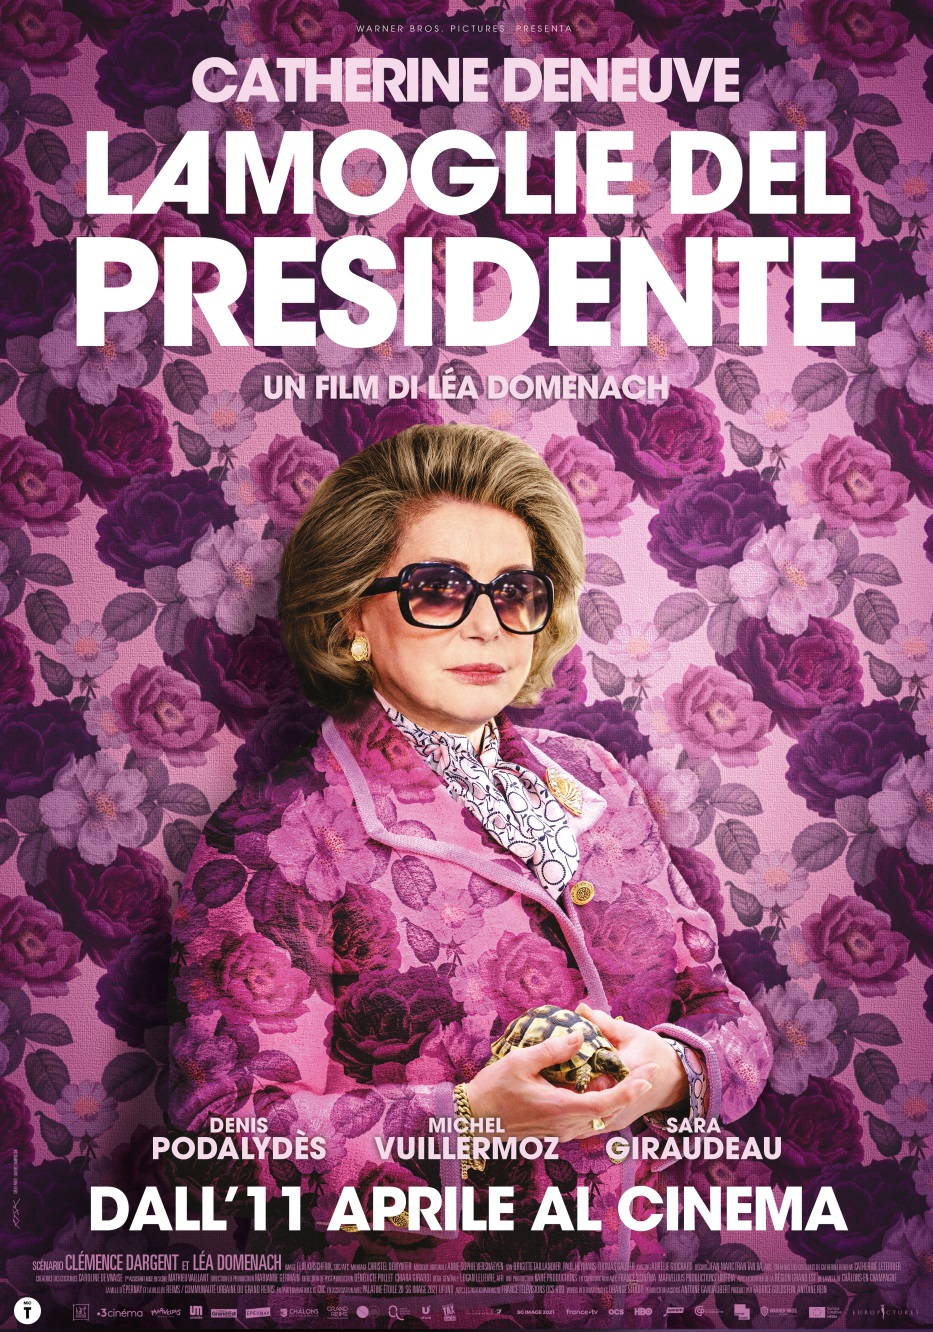 Al cinema con Europictures Italia "La moglie del presidente", la commedia di Léa Domenach con Catherine Deneuve nei panni della première dame di Francia Bernadette Chirac.